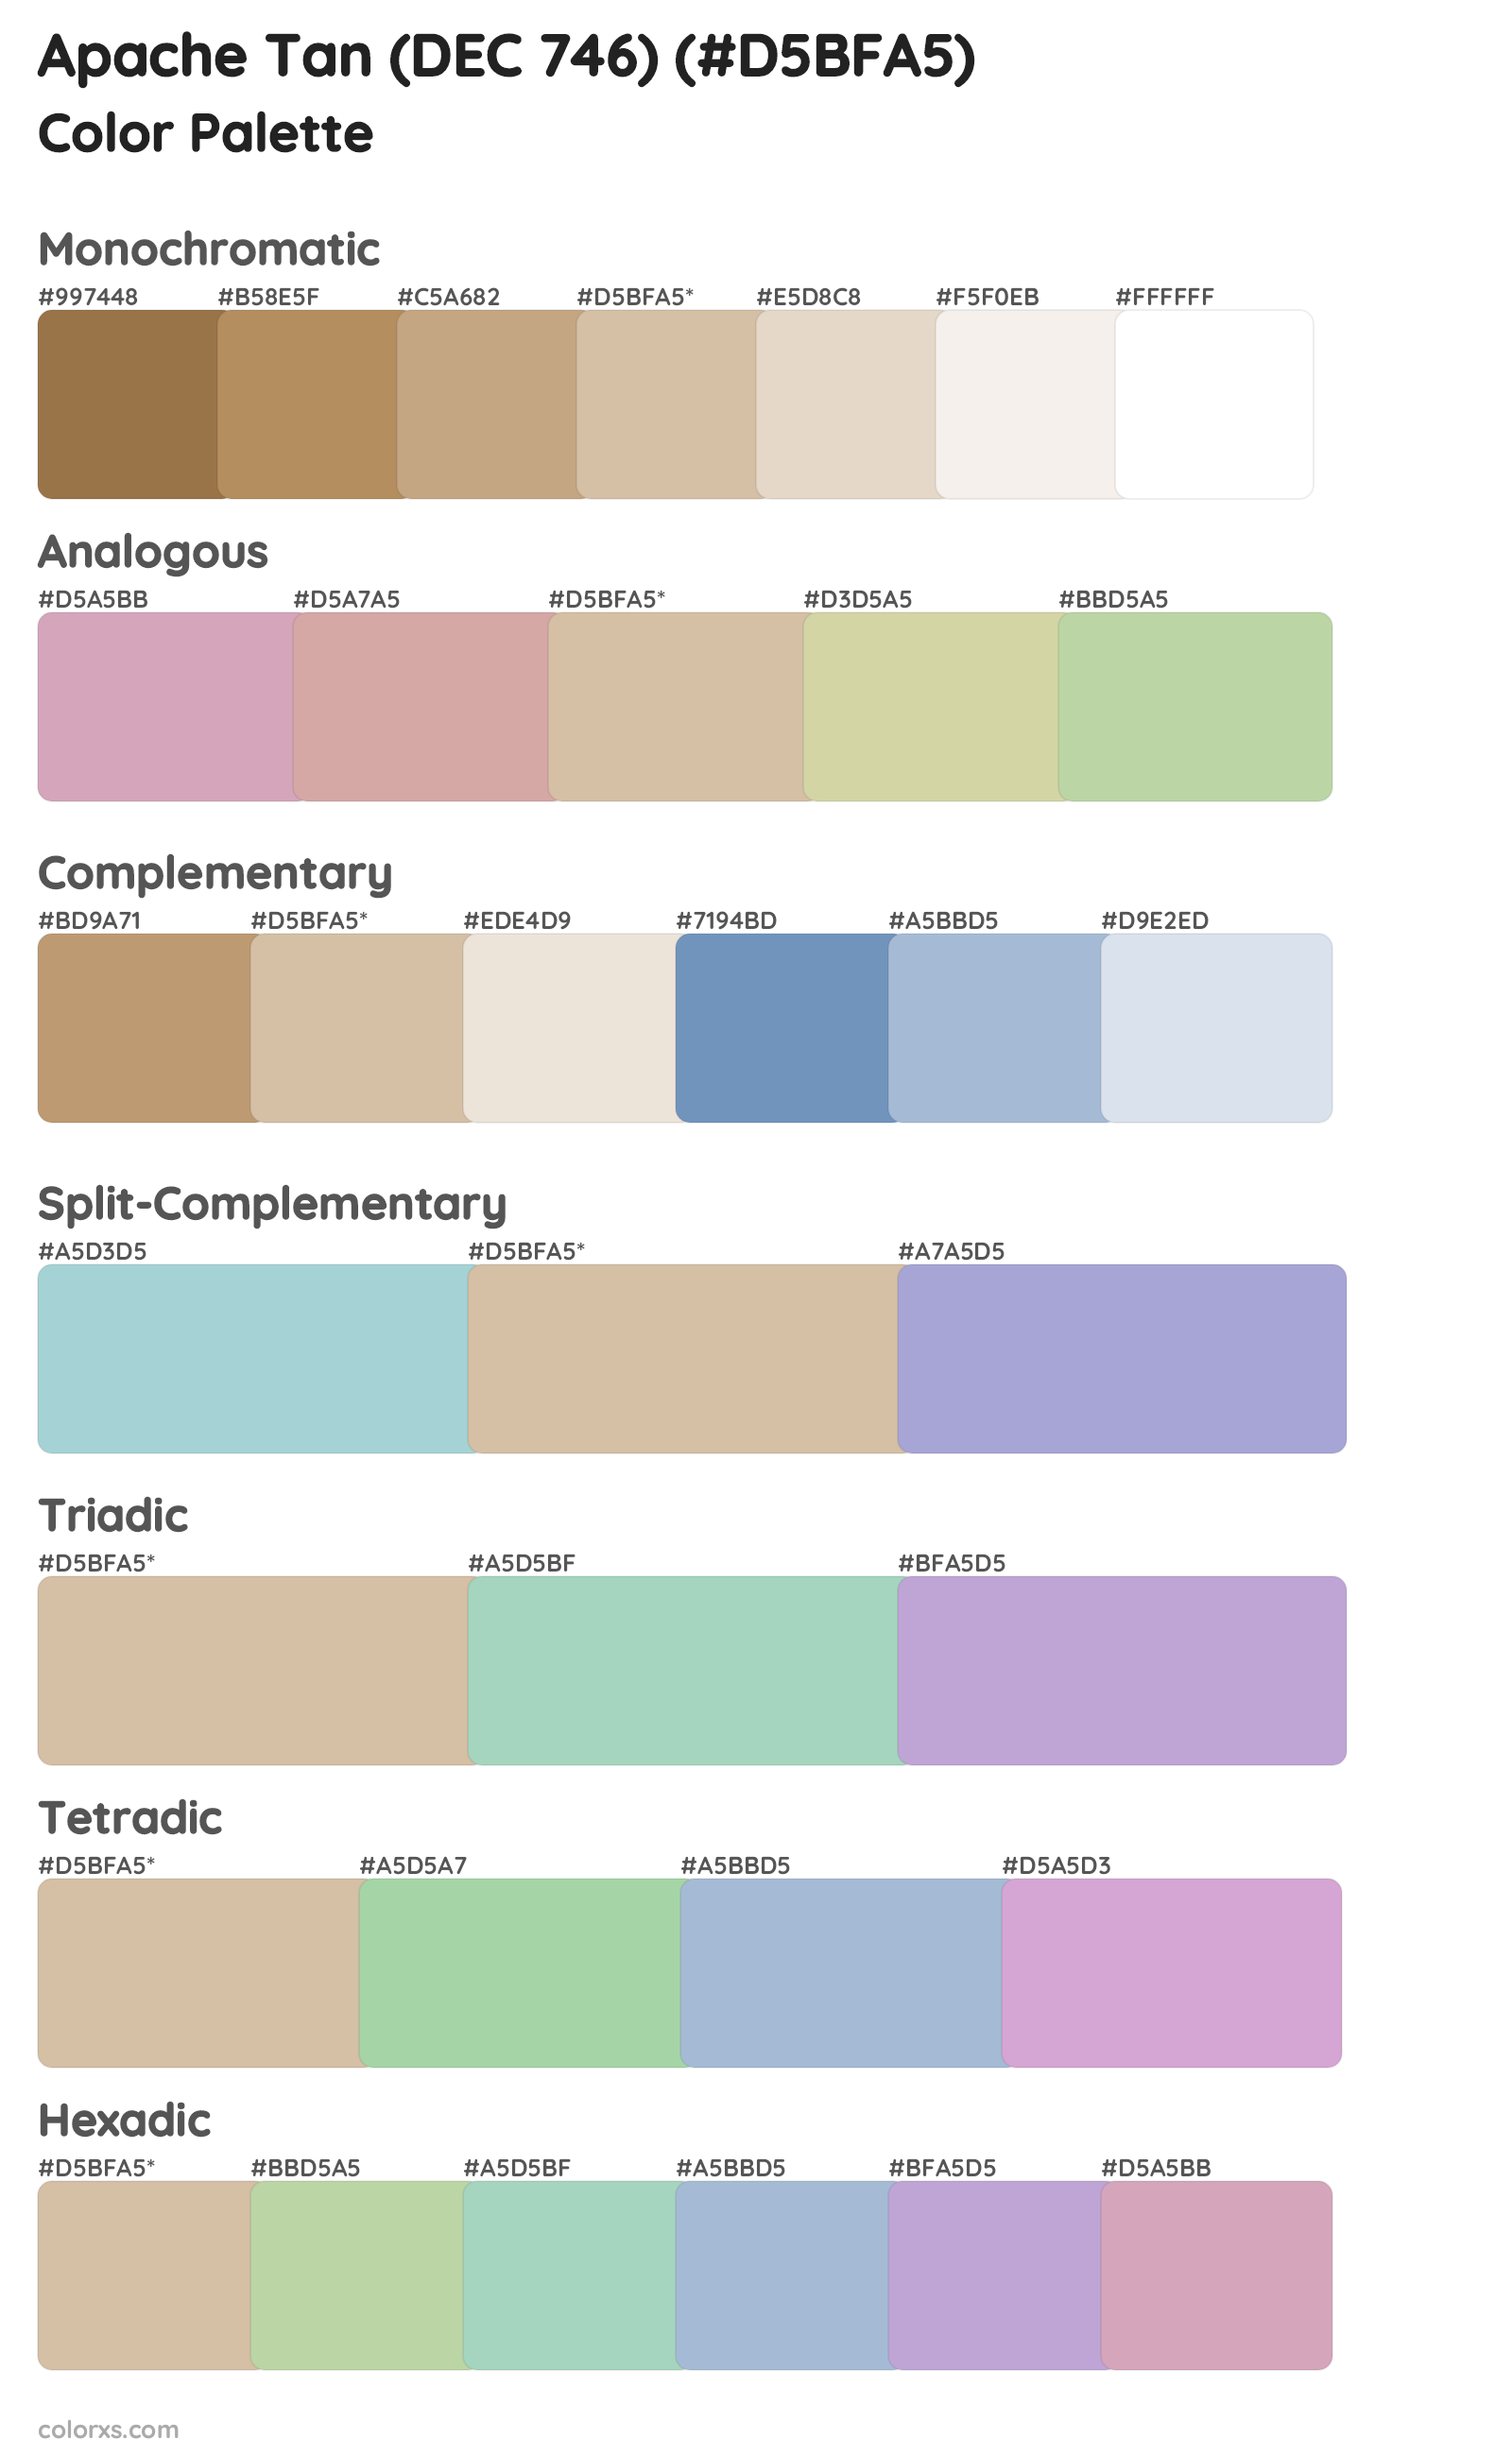 Apache Tan (DEC 746) Color Scheme Palettes